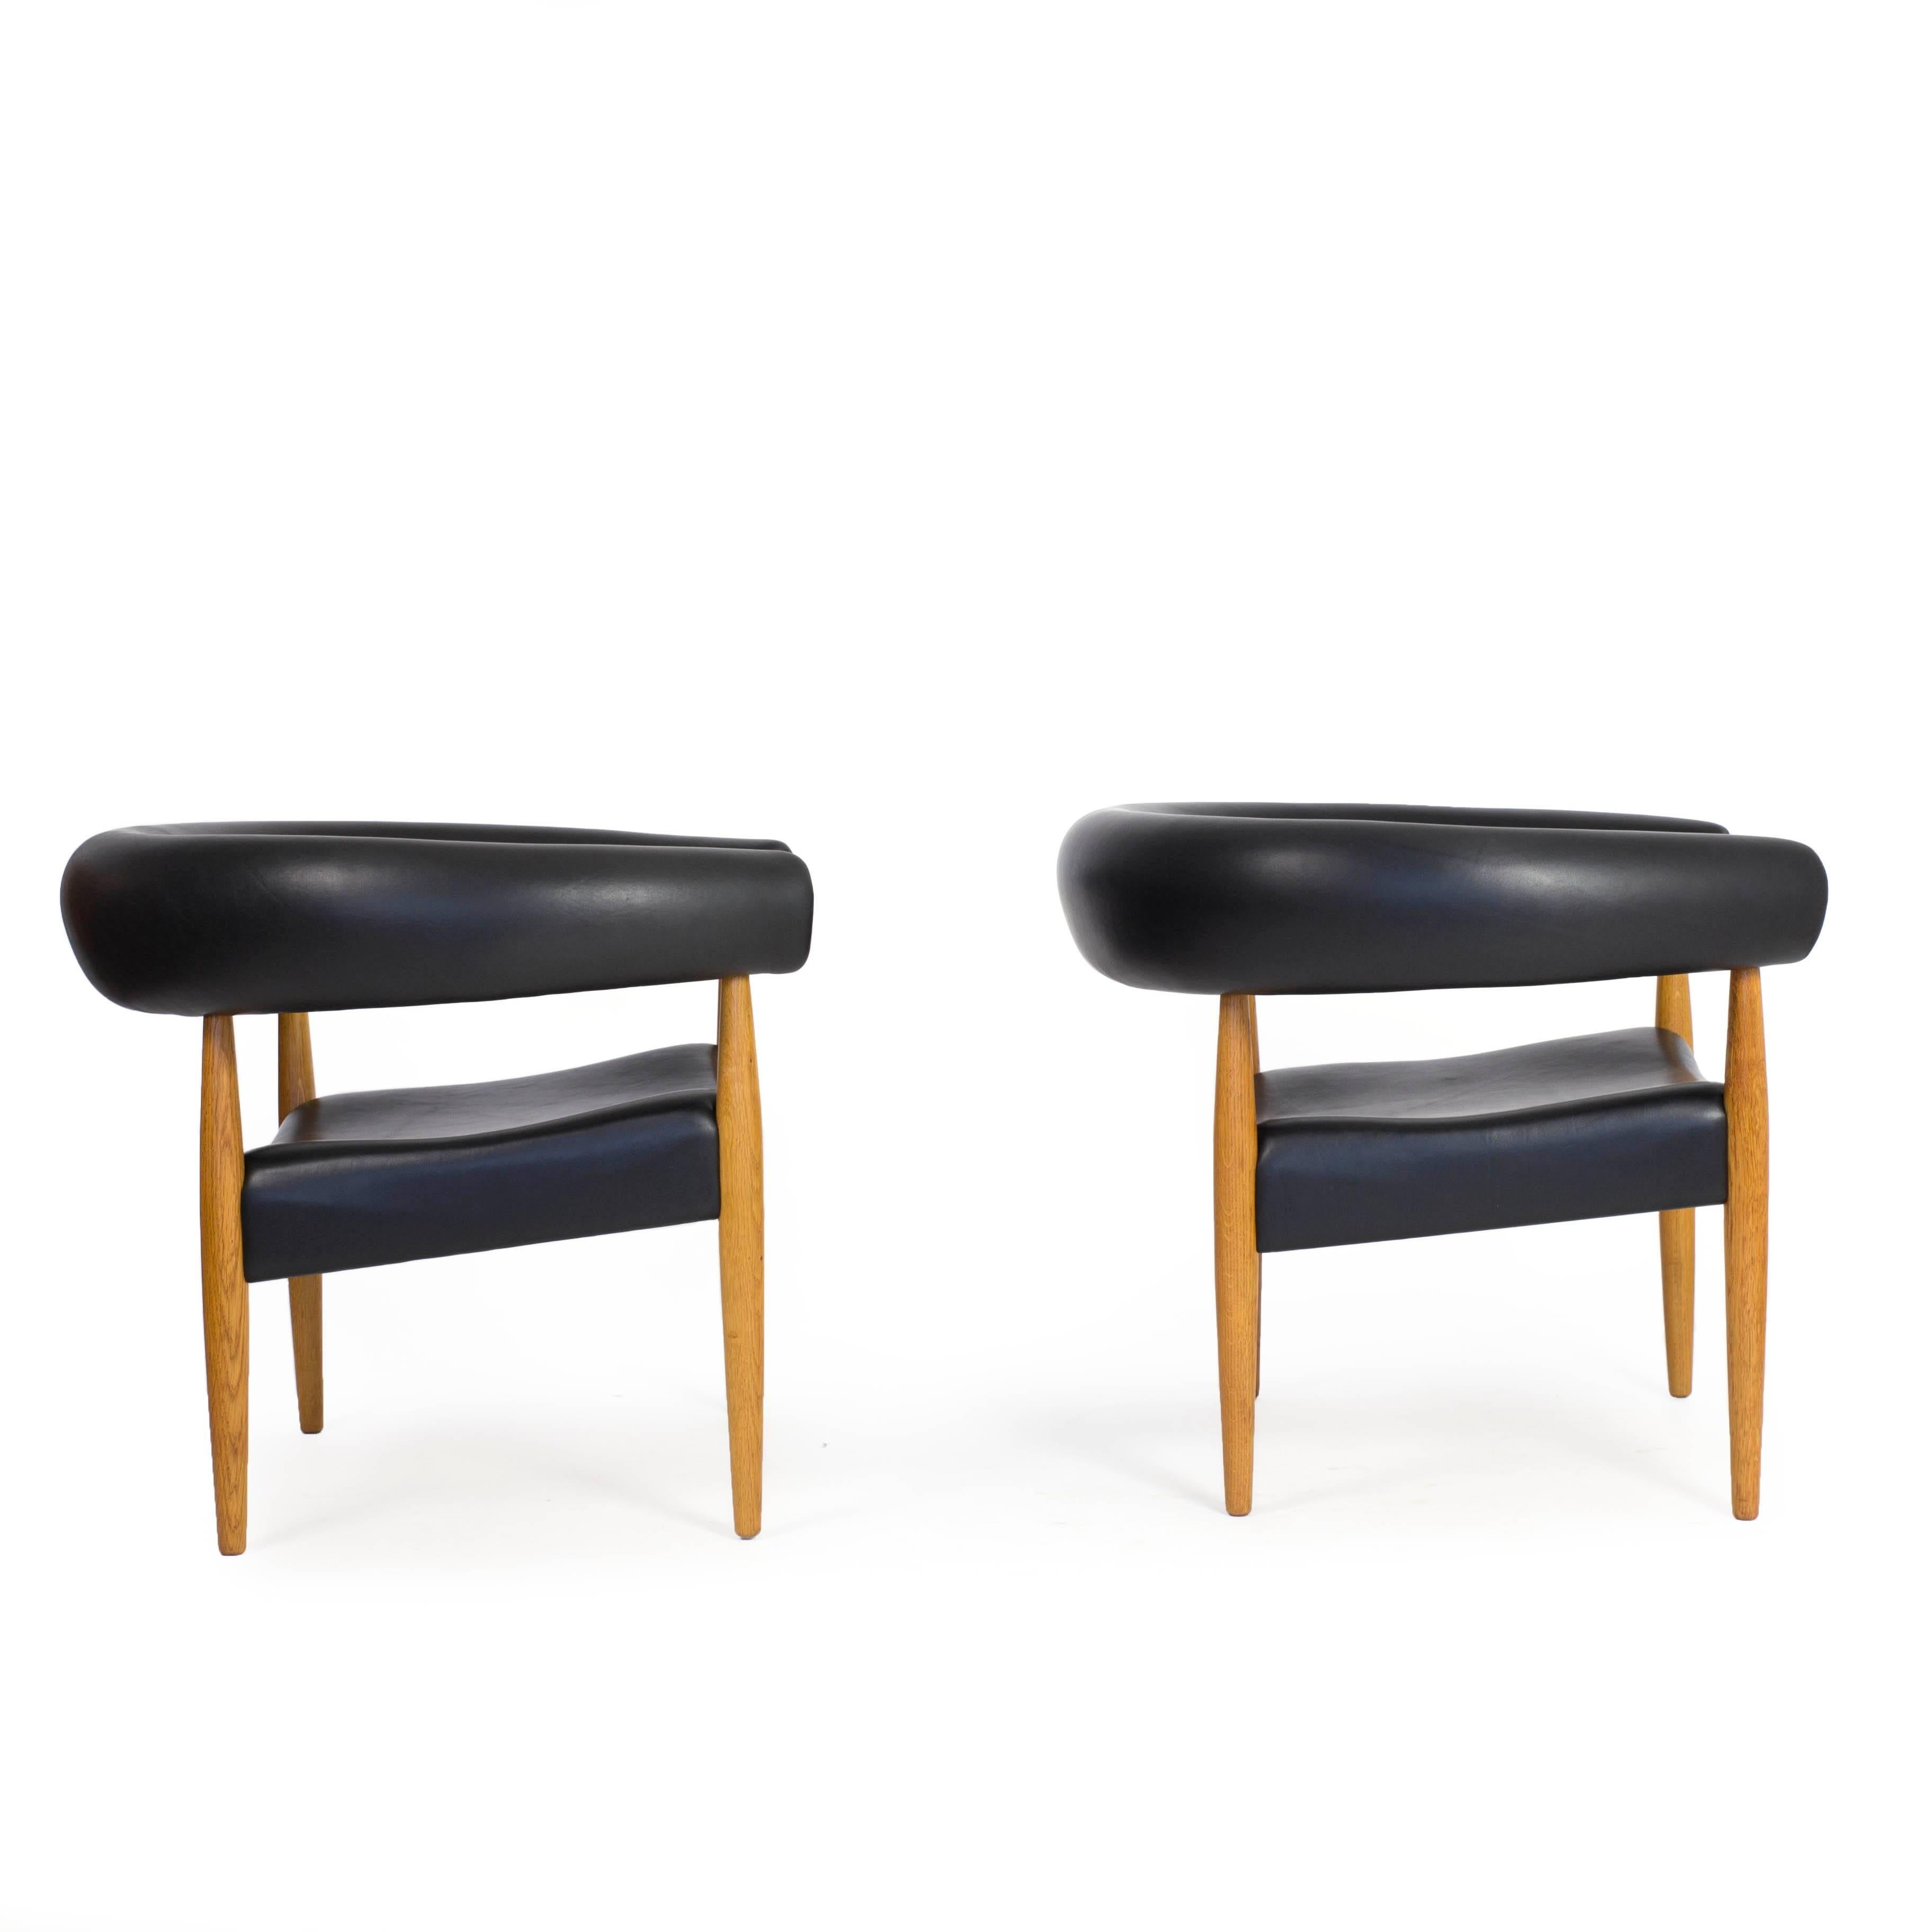 Scandinavian Modern Nanna Ditzel, Pair of Sausage Chairs, Kold Savvaerk, 1958